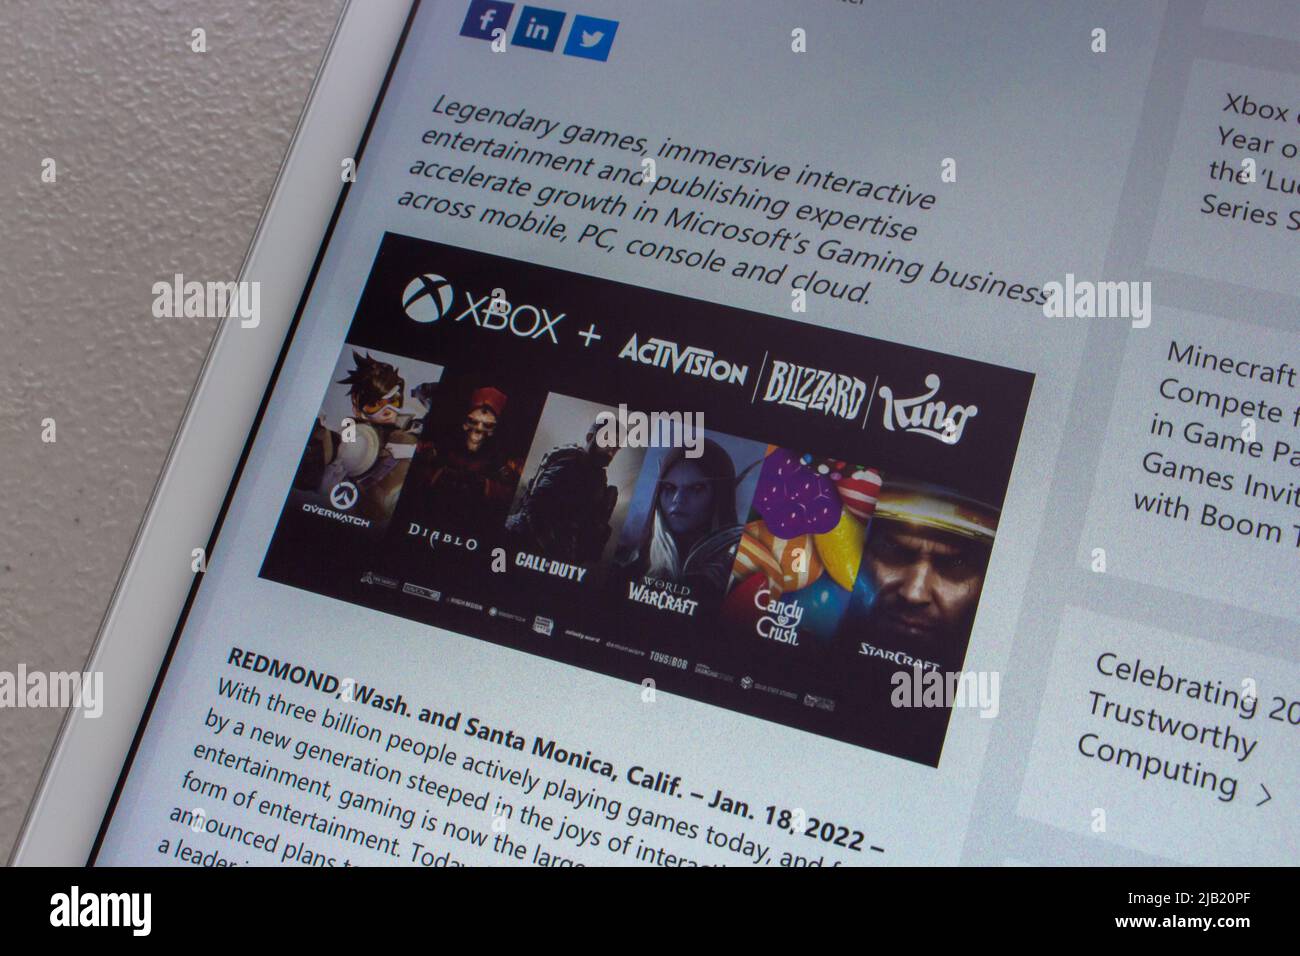 Kumamoto, GIAPPONE - Jan 24 2022 : Closeup “Microsoft per acquisire Activision Blizzard” post del blog nel sito web Microsoft su tablet. Foto Stock